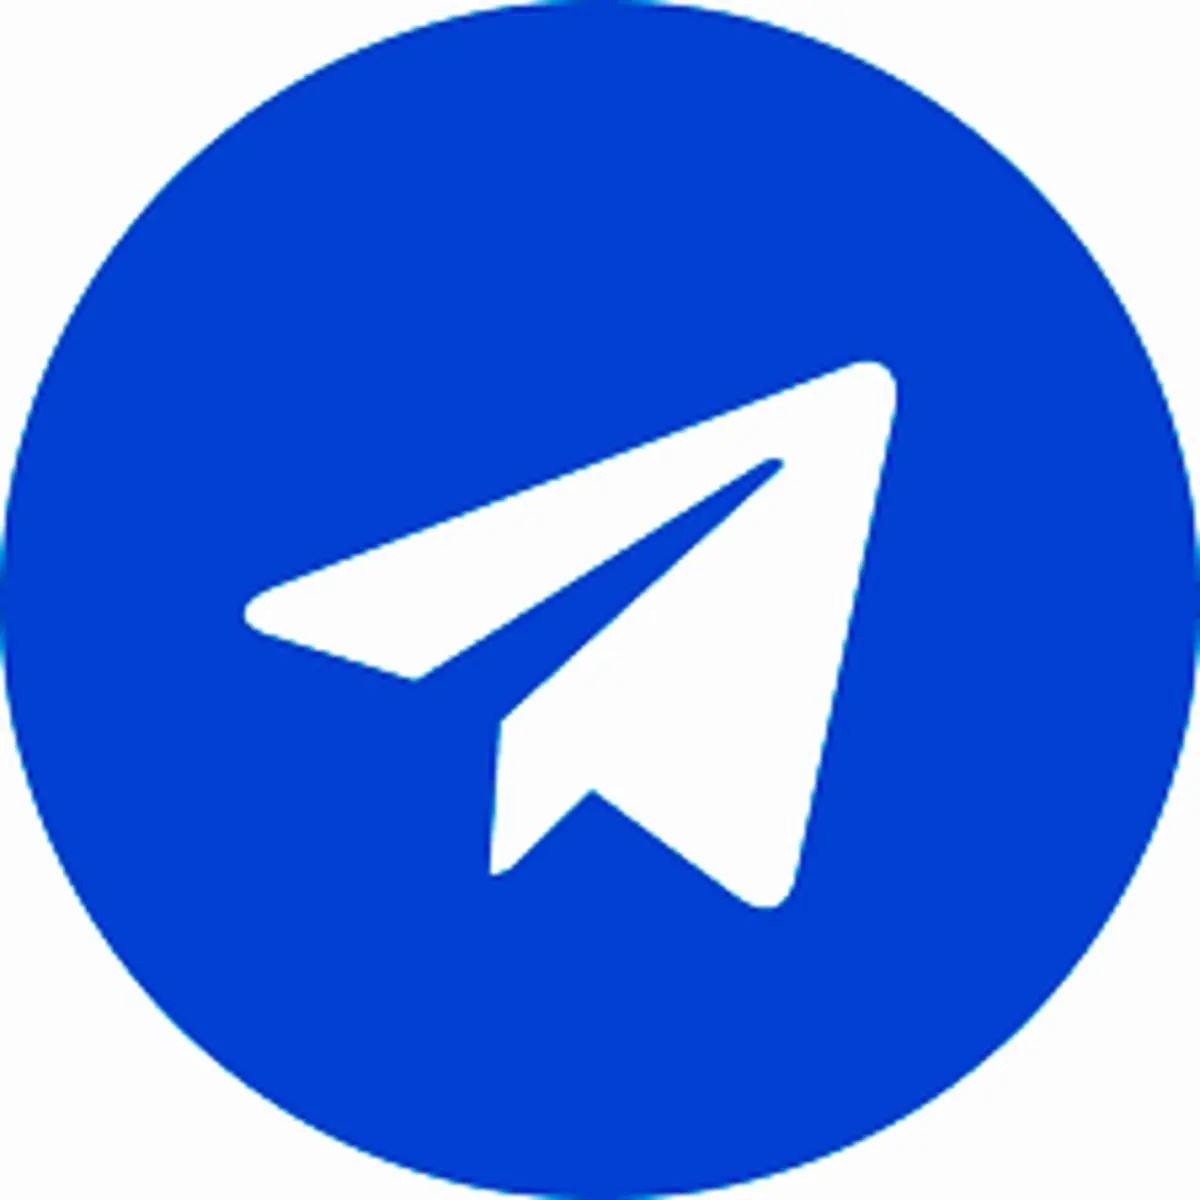 سخت گیری تلگرام برای کاربران  رایگان دو برابر شد 
